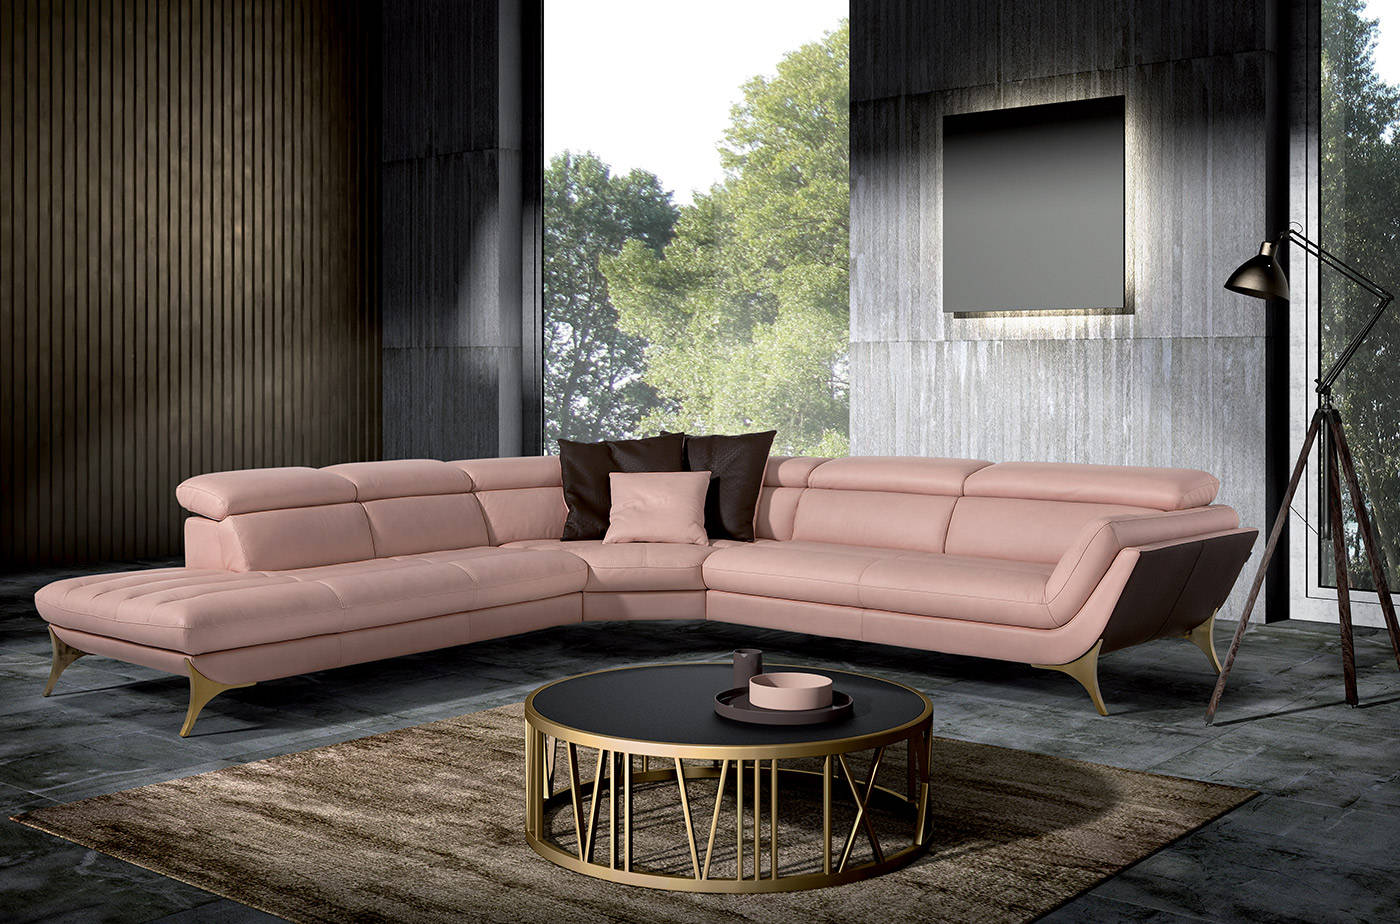 意大利egoitaliano沙发品牌,拥有意大利原创设计,专注